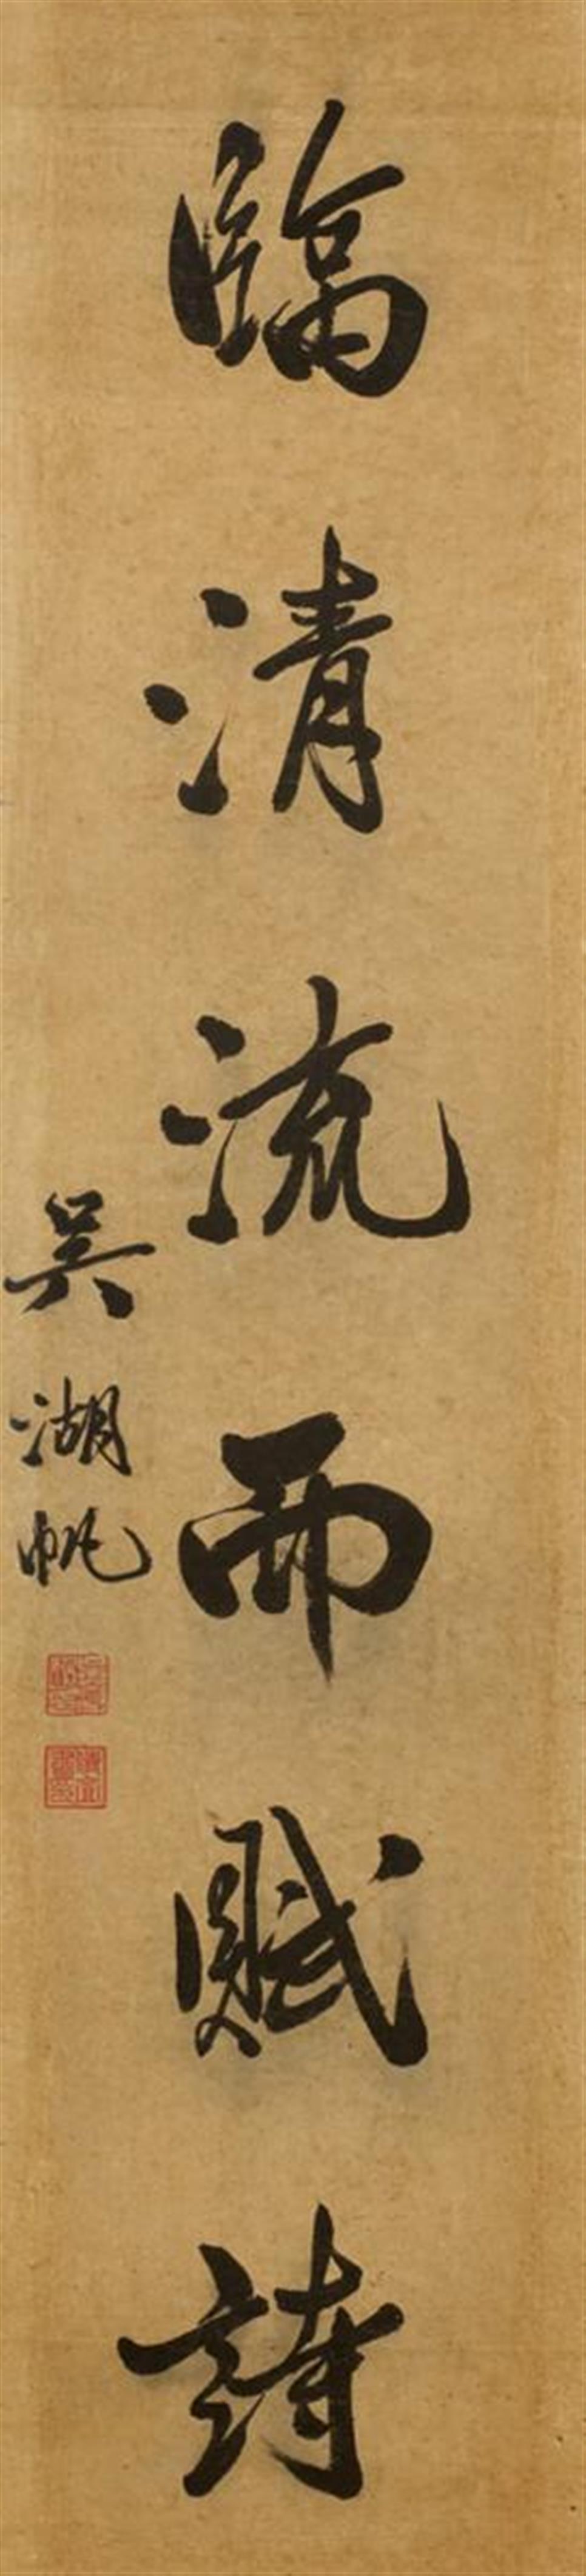 Wu Hufan, in der Art - Kalligraphie. Gedichtzeile aus dem Gedicht "Gui qu lai xi ci" („Rückkehr“) von Tao Yuanming (365-427). Hängerolle. Tusche und Gold auf Papier. Bez.: Wu Hufan und zwei Siegel. - image-1